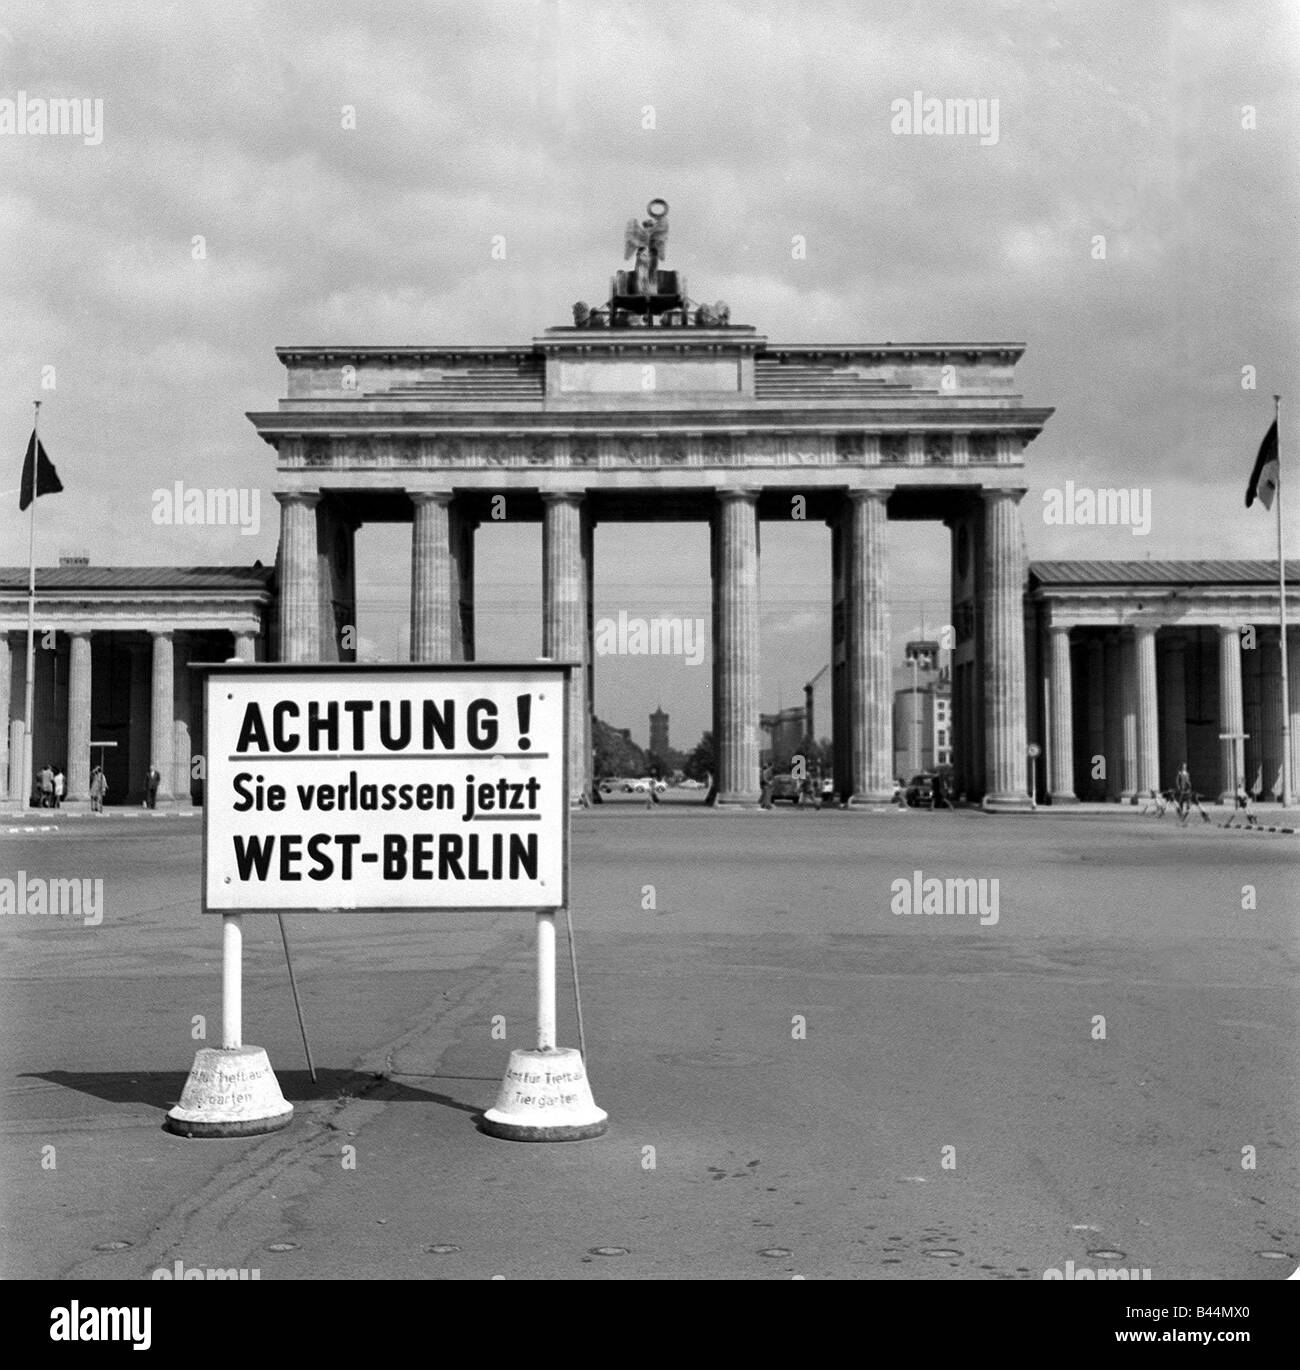 Deutschland-Mauerbau August 1961 die Ost-West-Grenze durch die ostdeutschen Brandenburger  Tor geschlossen ist Stockfotografie - Alamy